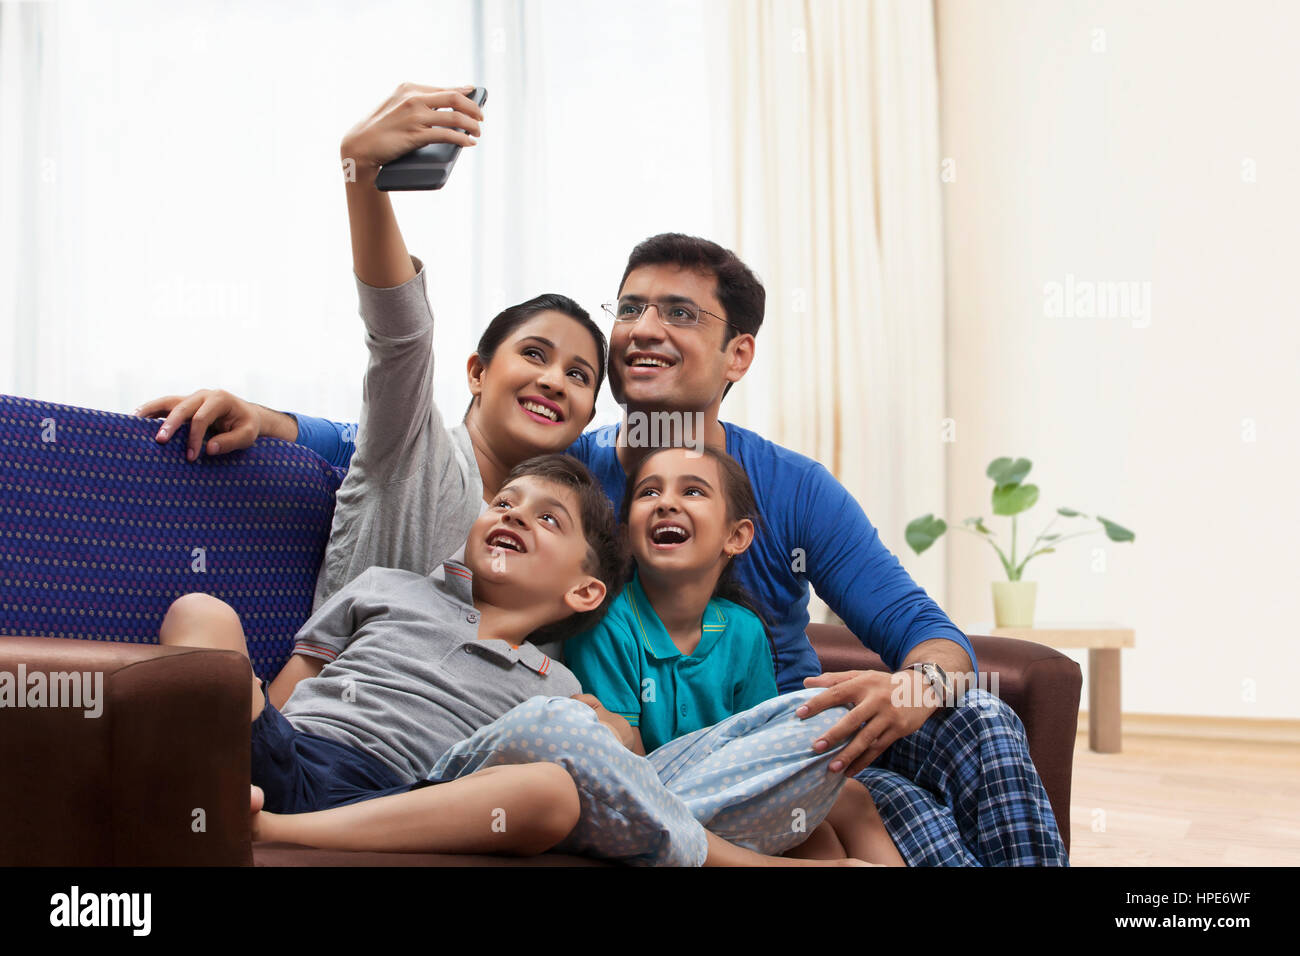 Famiglia in pigiama tenendo selfie sul divano Foto Stock